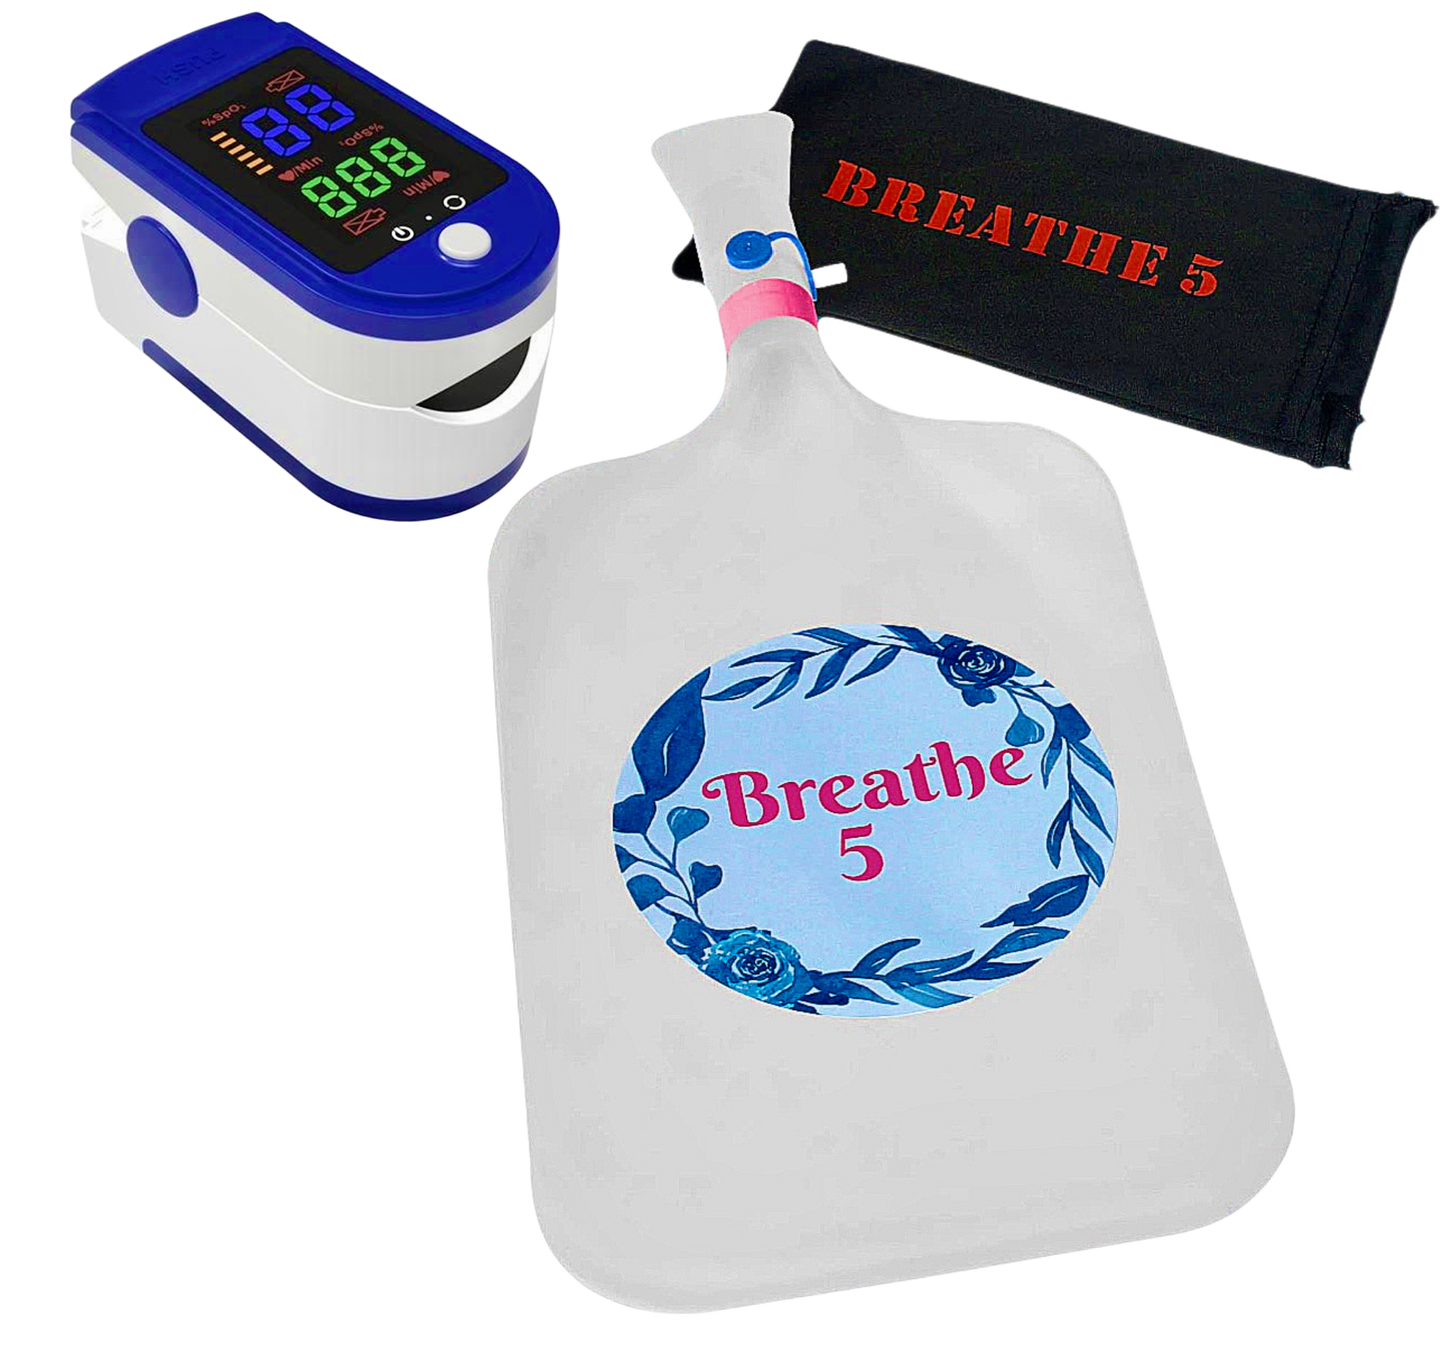 Breathe 5 Device